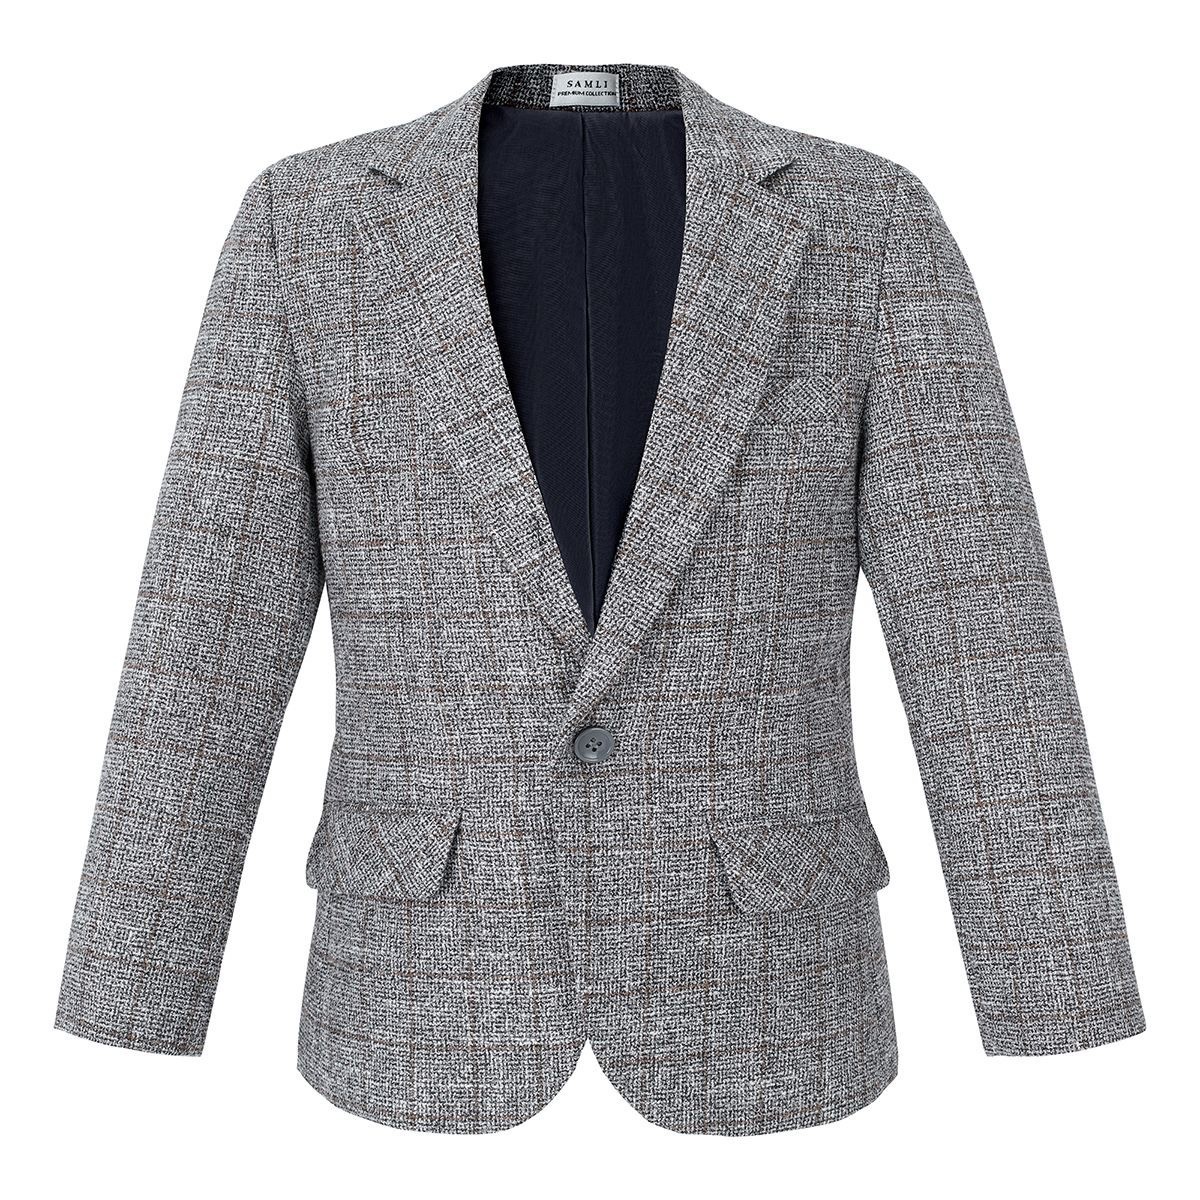 Jungen-Baumwoll-Tweed-ähnlicher Karo-Tailored-Fit-Blazer